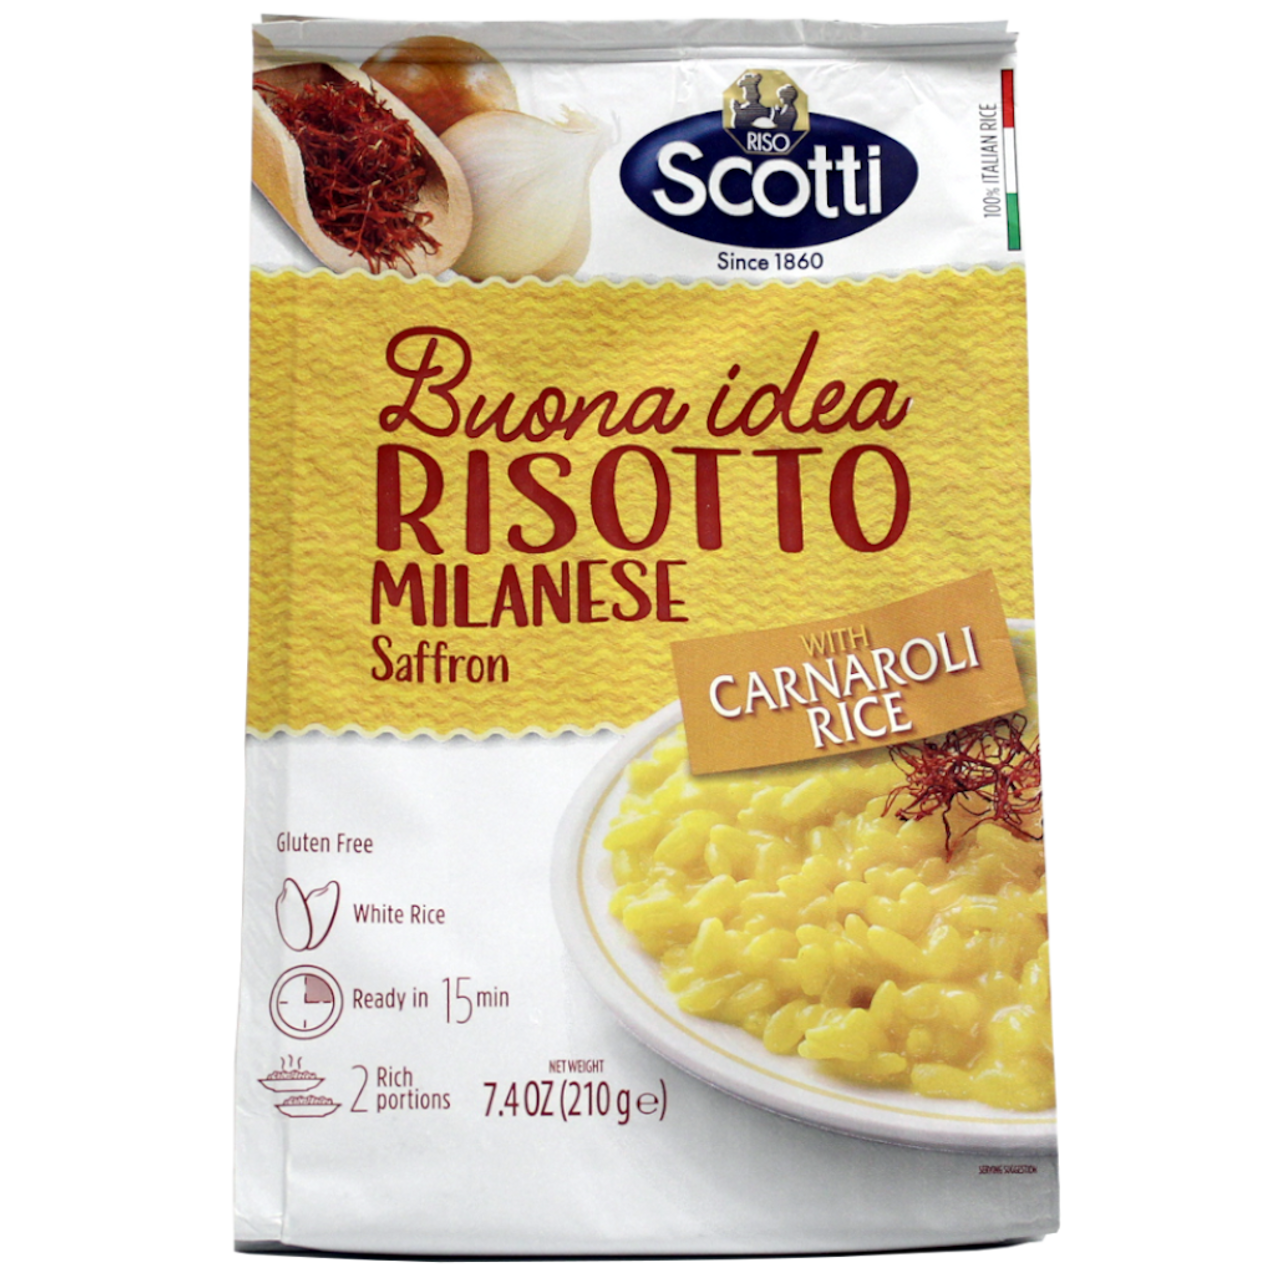 Riso Scotti Buona Idea Risotto Milanese with Carnaroli Rice and